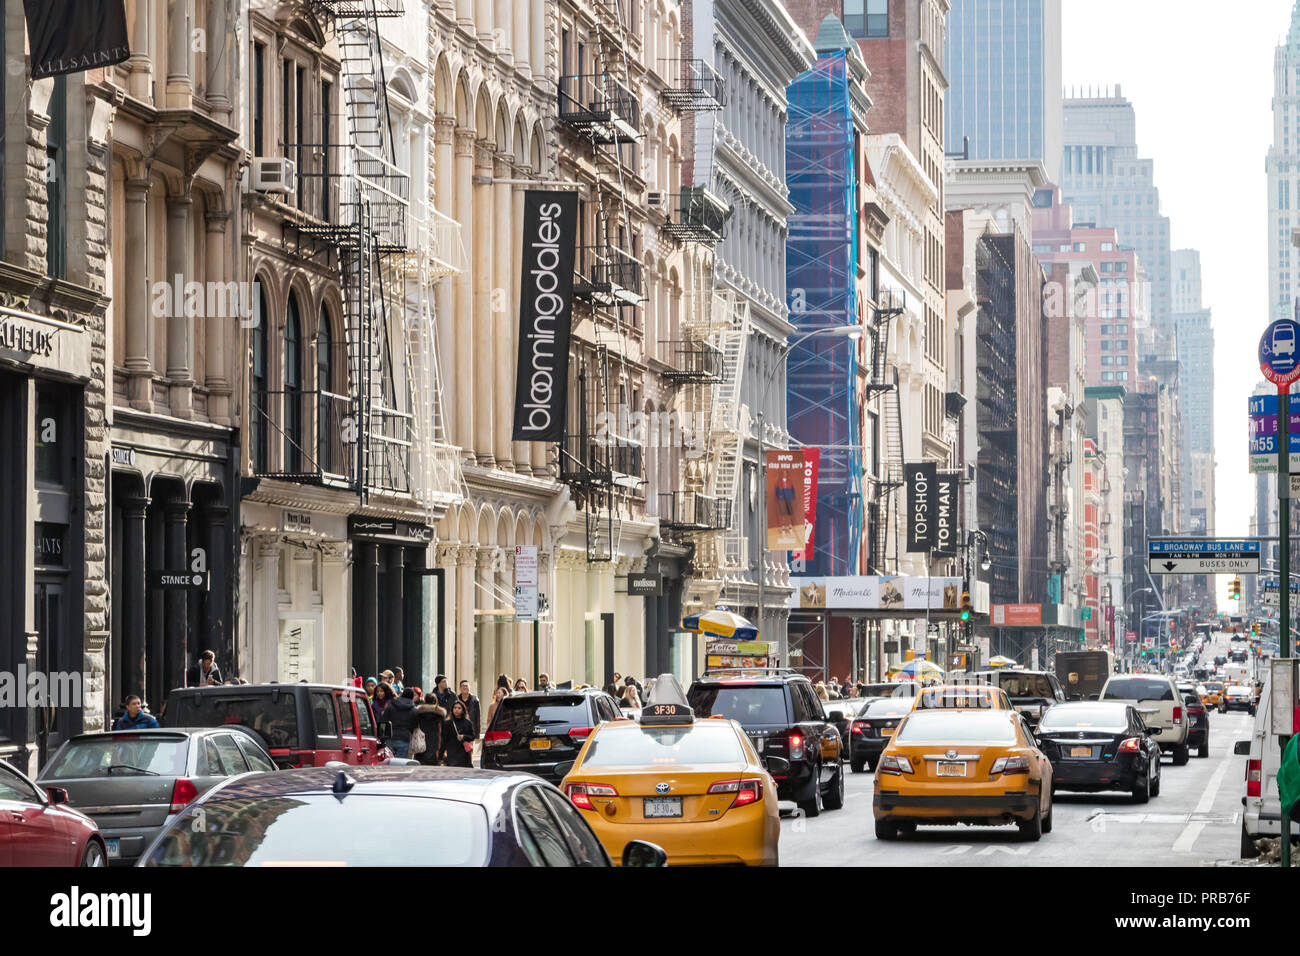 La CIUDAD DE NUEVA YORK, circa 2018: unidades de Tráfico por Broadway como multitudes de personas recorren las aceras de SoHo, en un día ocupado en Manhattan, Ciudad de Nueva York. Foto de stock